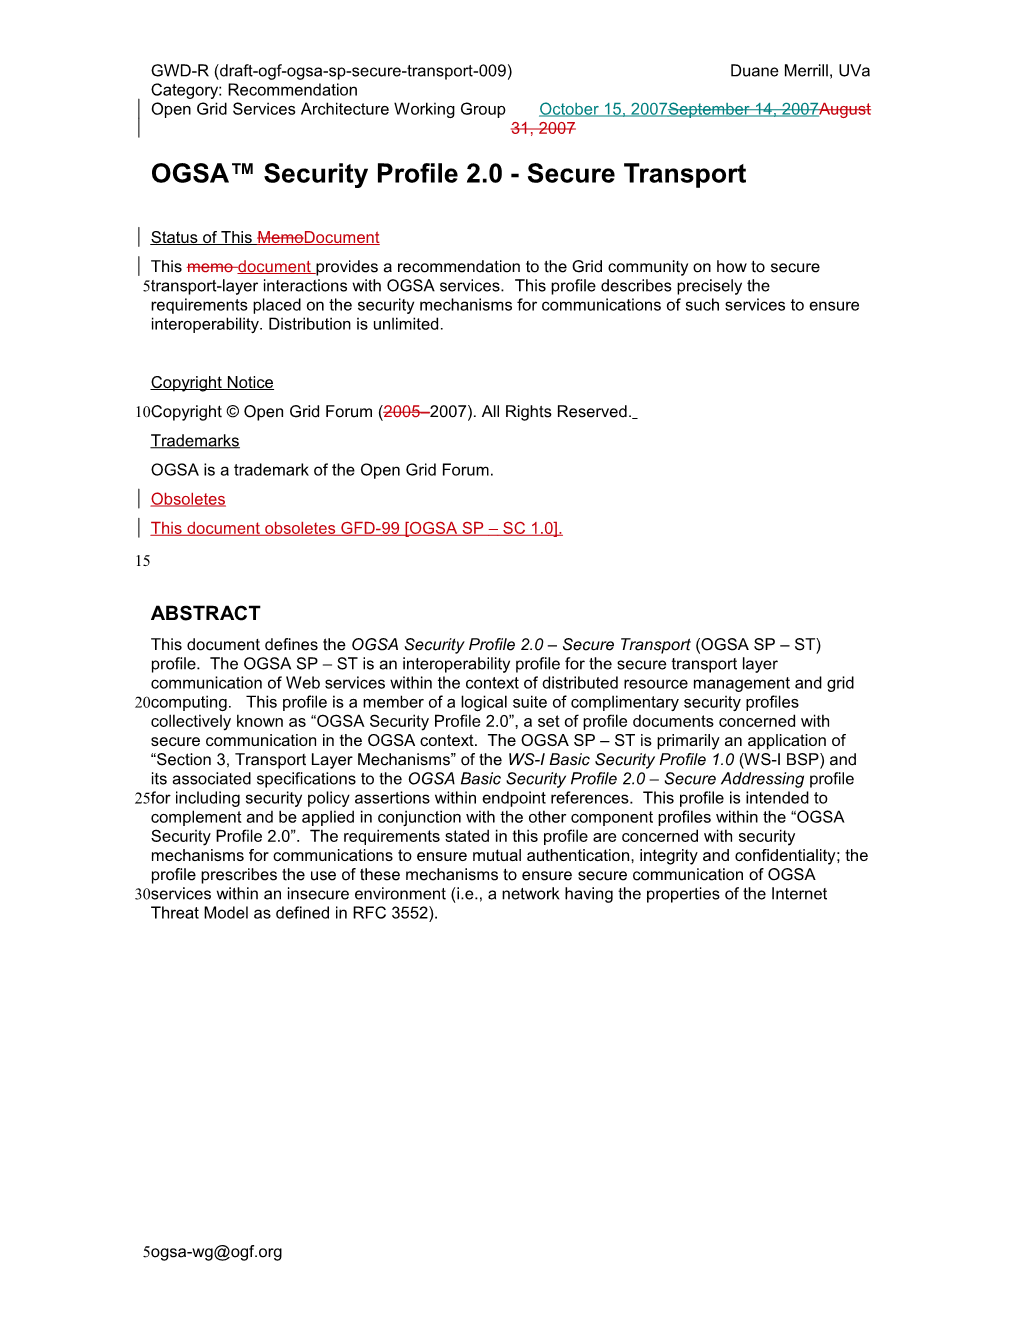 OGSA Security Profile 2.0 - Secure Transport